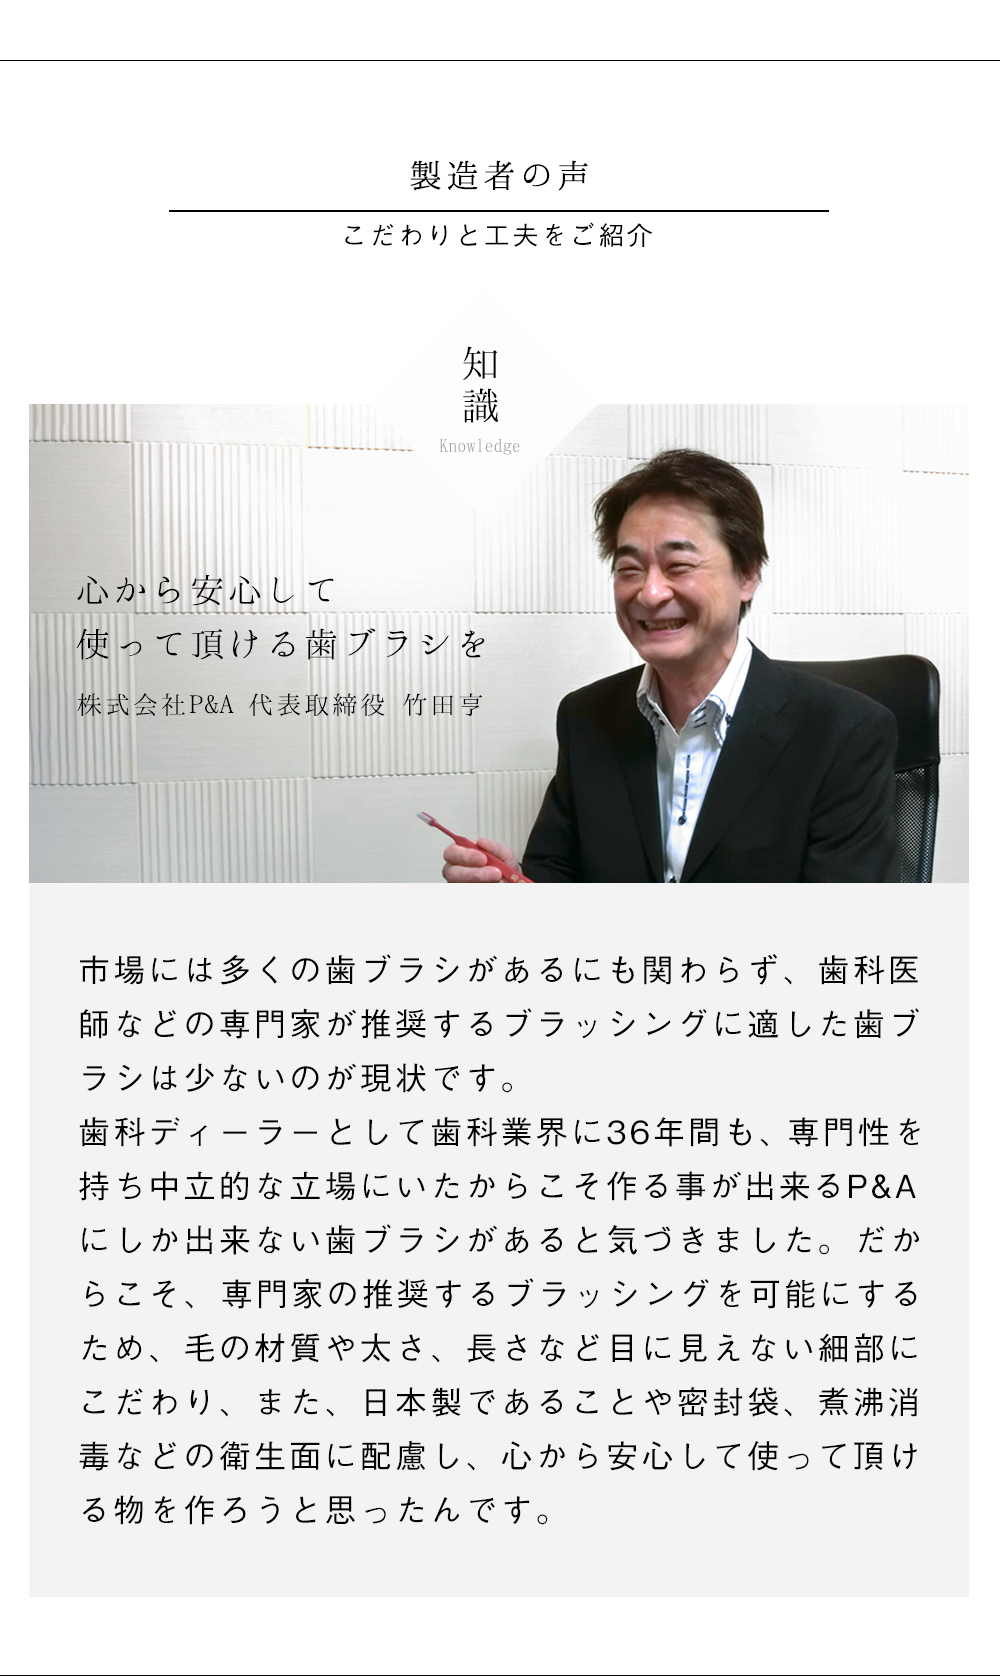 株式会社P&A代表取締役 竹田亨の艶白(つやはく)への思いと開発のきっかけ